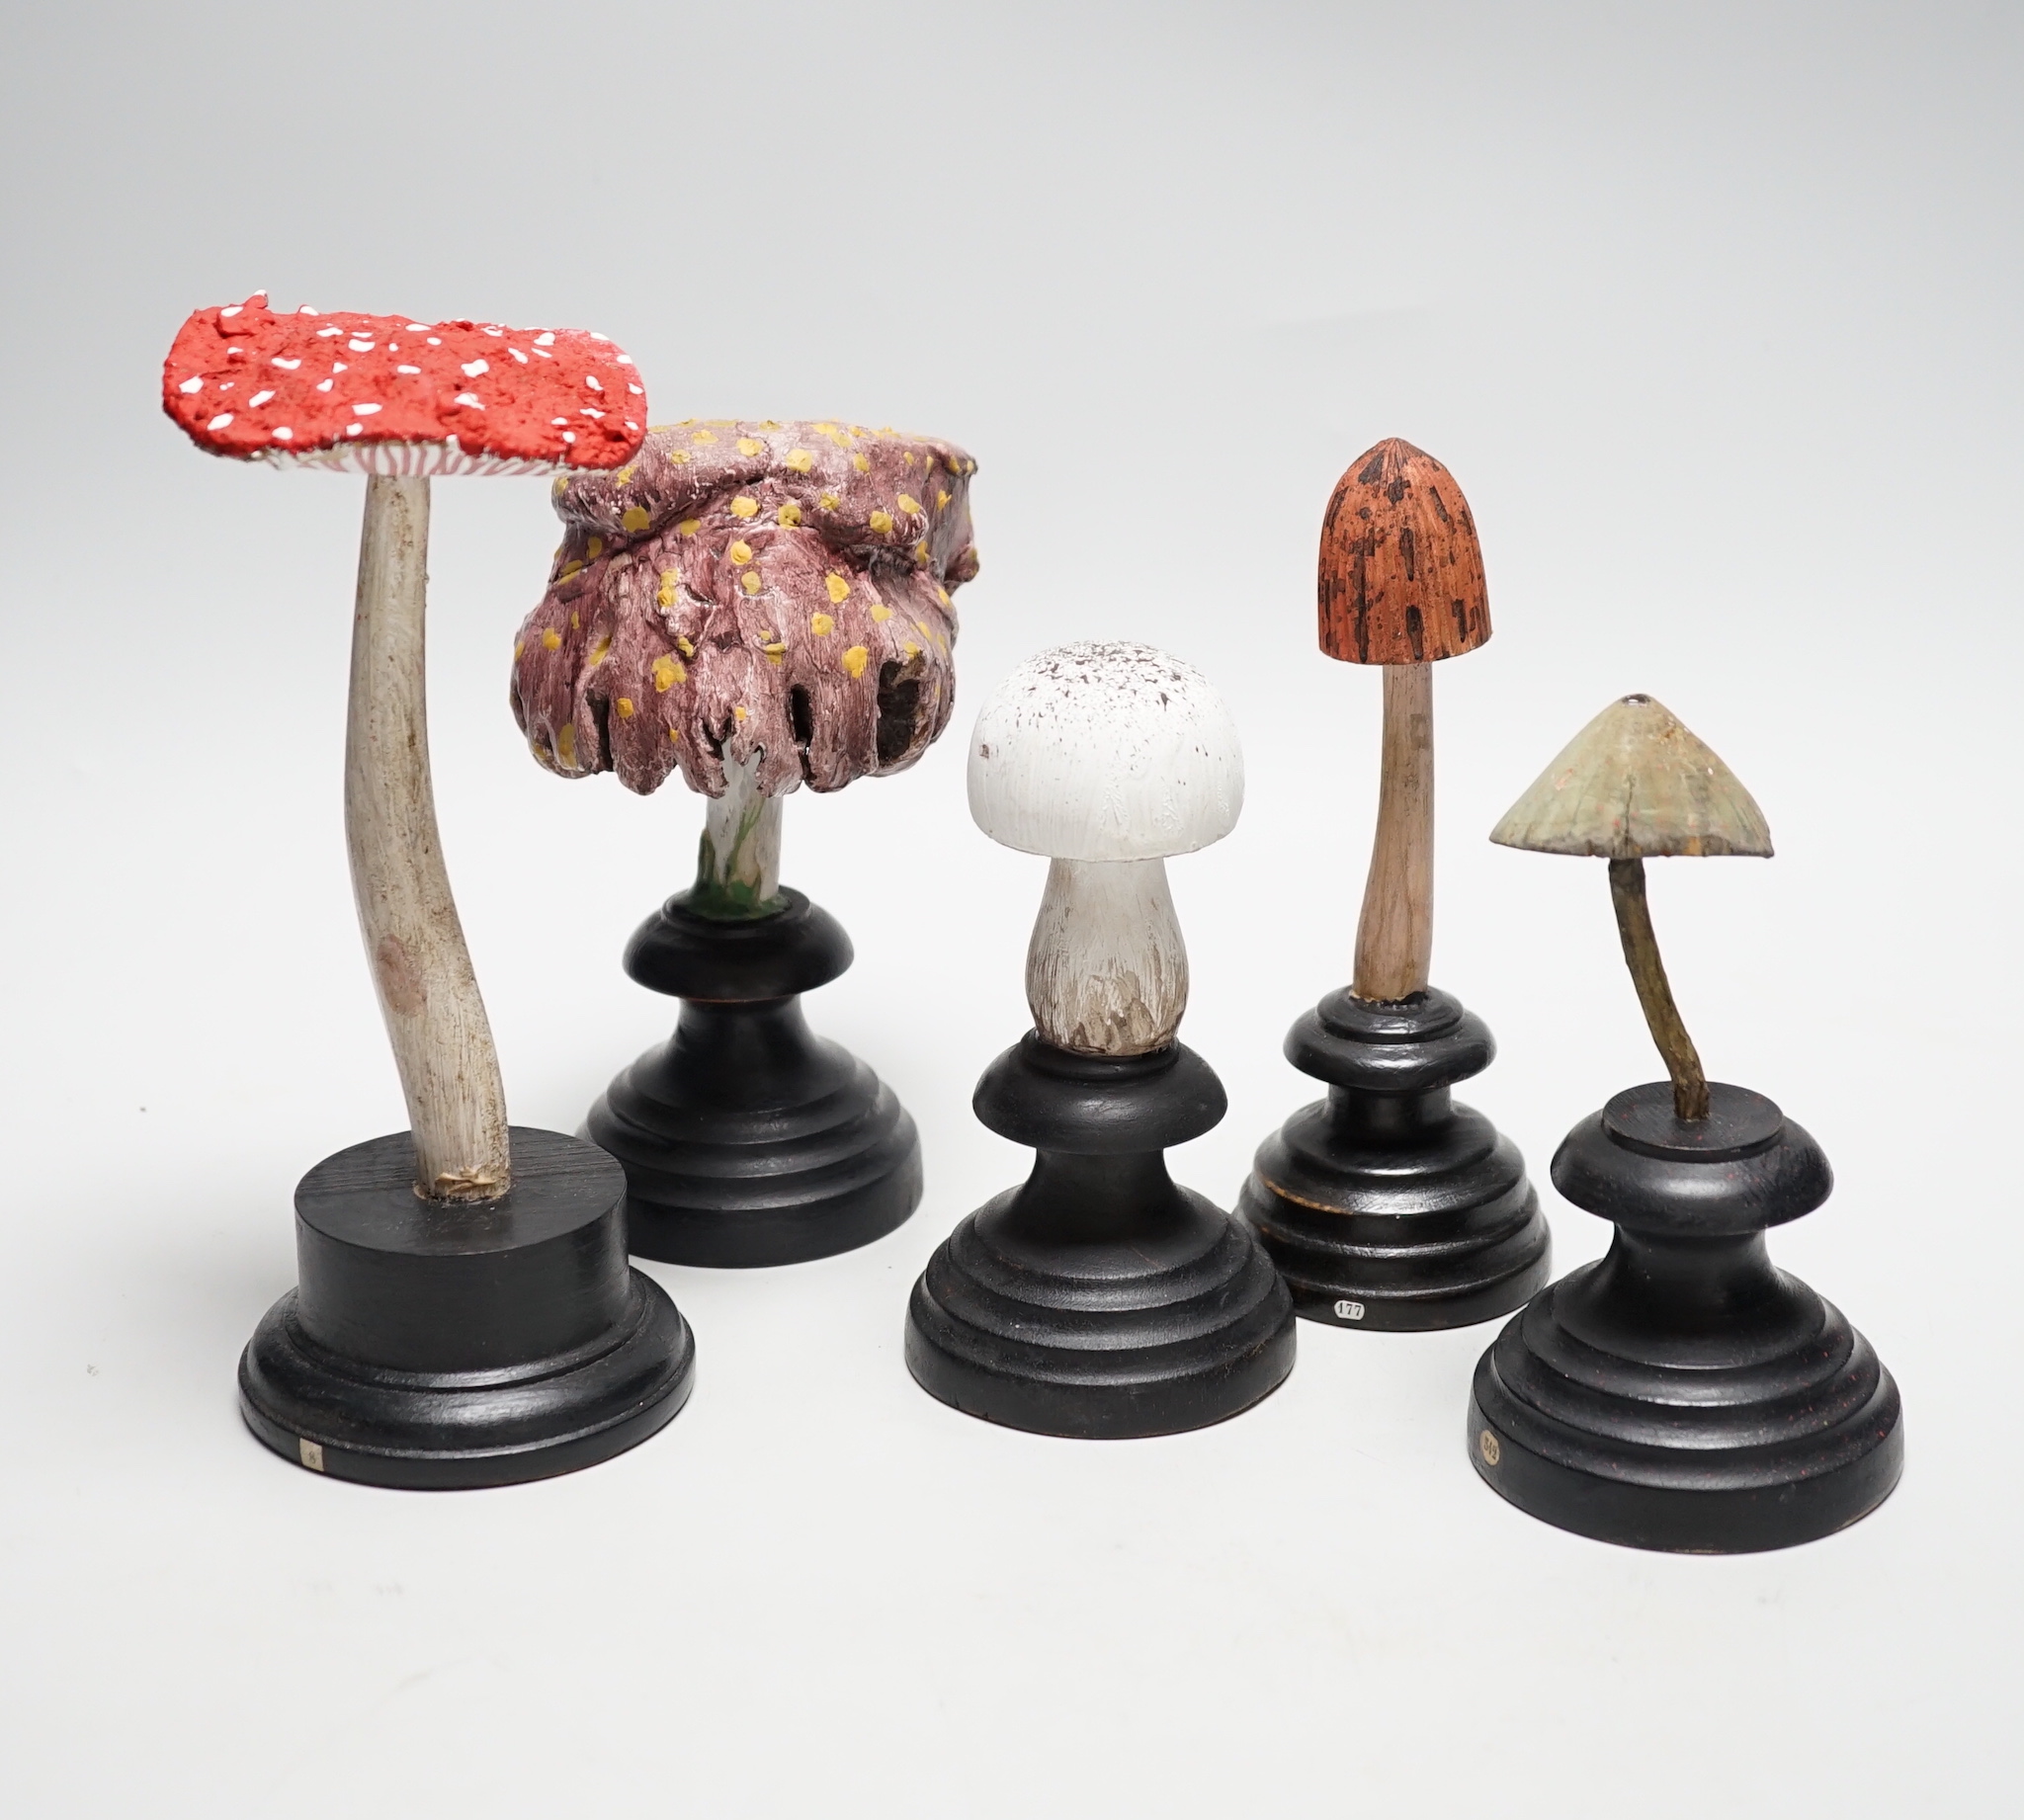 Twelve carved wood fungus specimen models, tallest 24cm